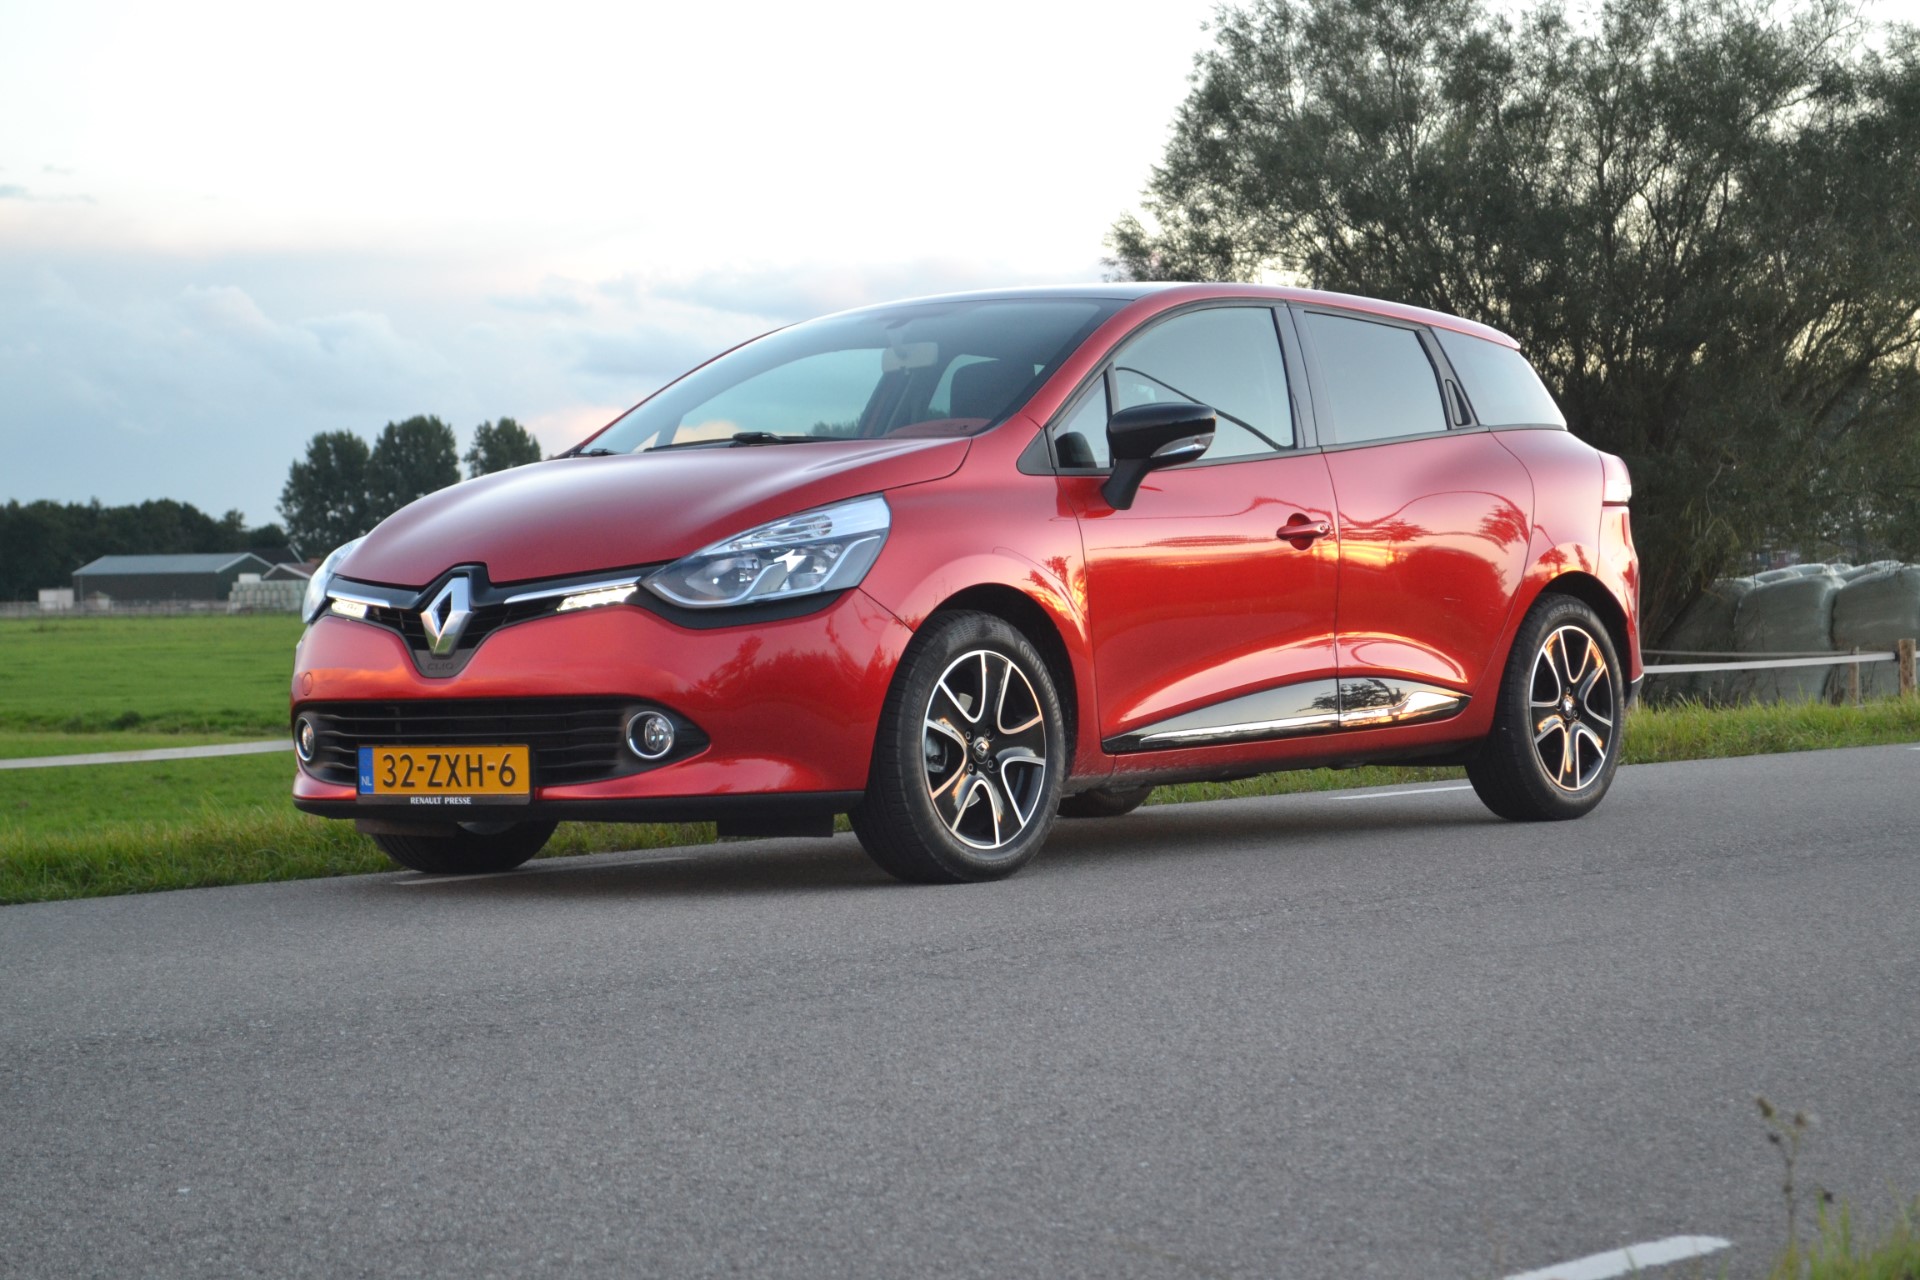 Wiskundige fabriek dempen Test Renault Clio Estate dCi 90 - Autoverhaal.nl